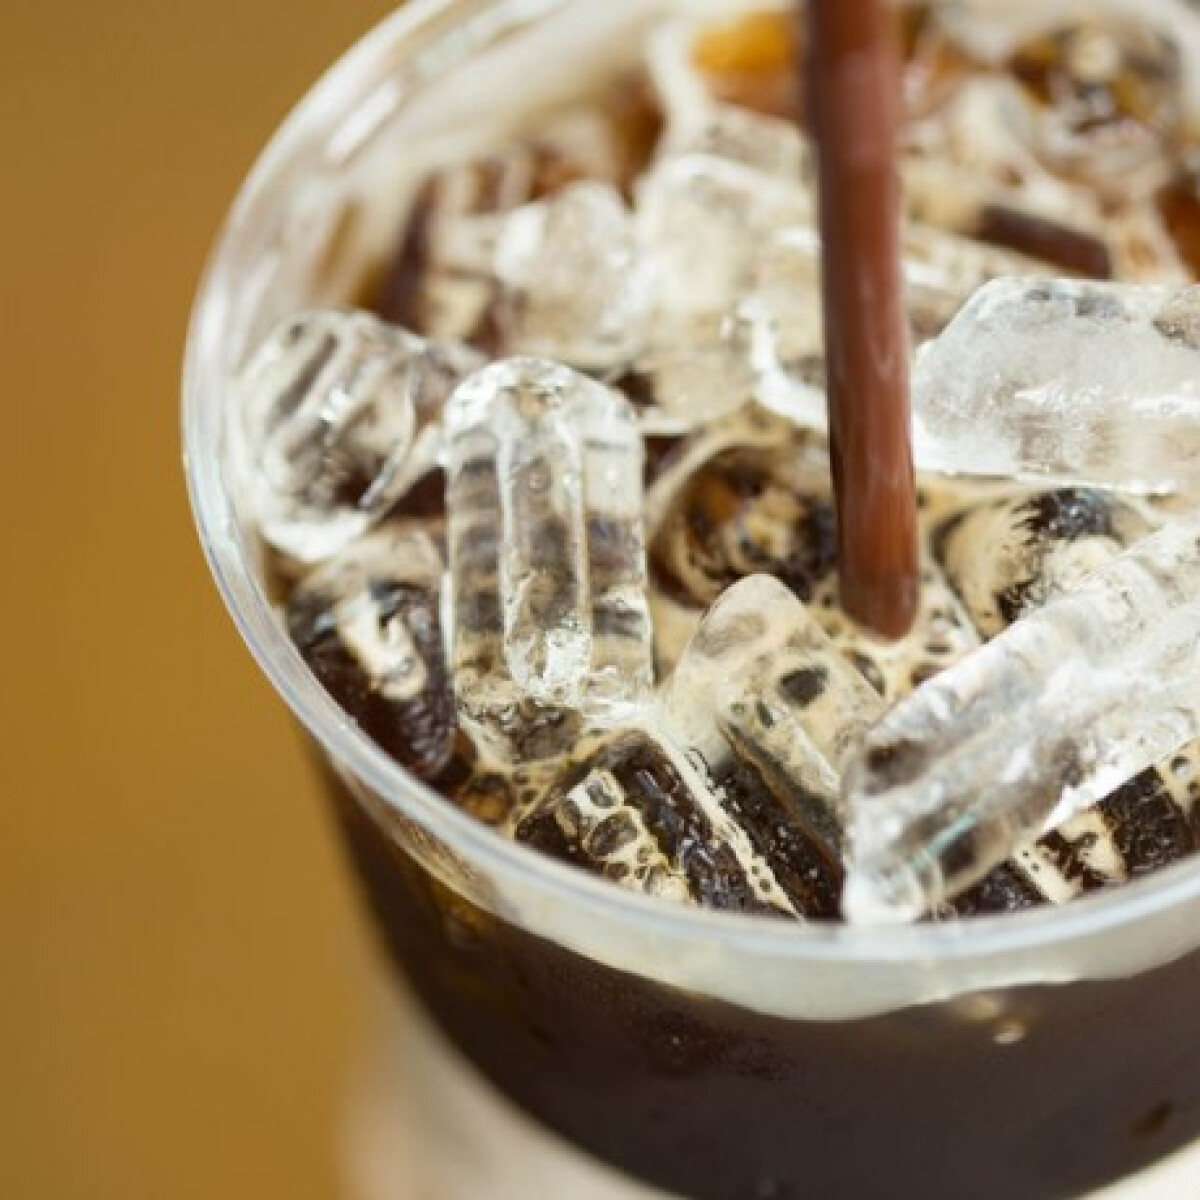 Össztűz alatt a Starbucks és a Costa Coffee a baktériummal fertőzött jég miatt